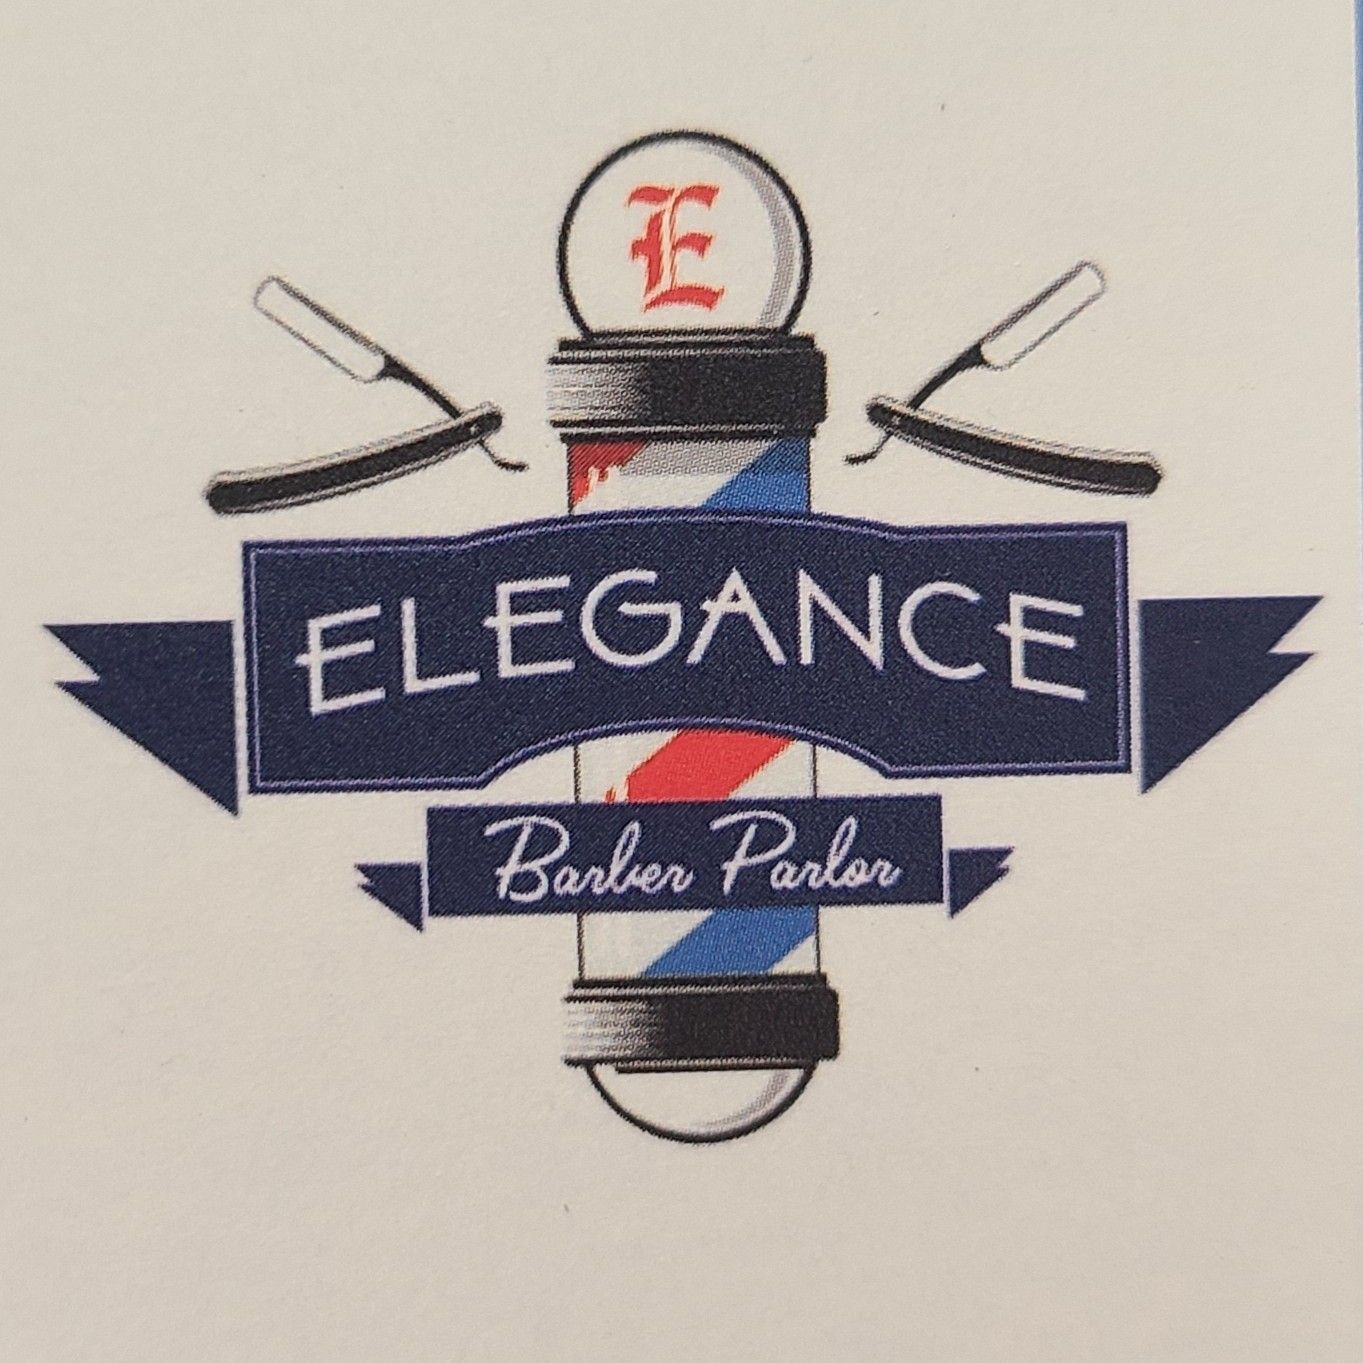 Jose-Elegance Barber Parlor, 650 Oaklawn Ave, Cranston, 02920